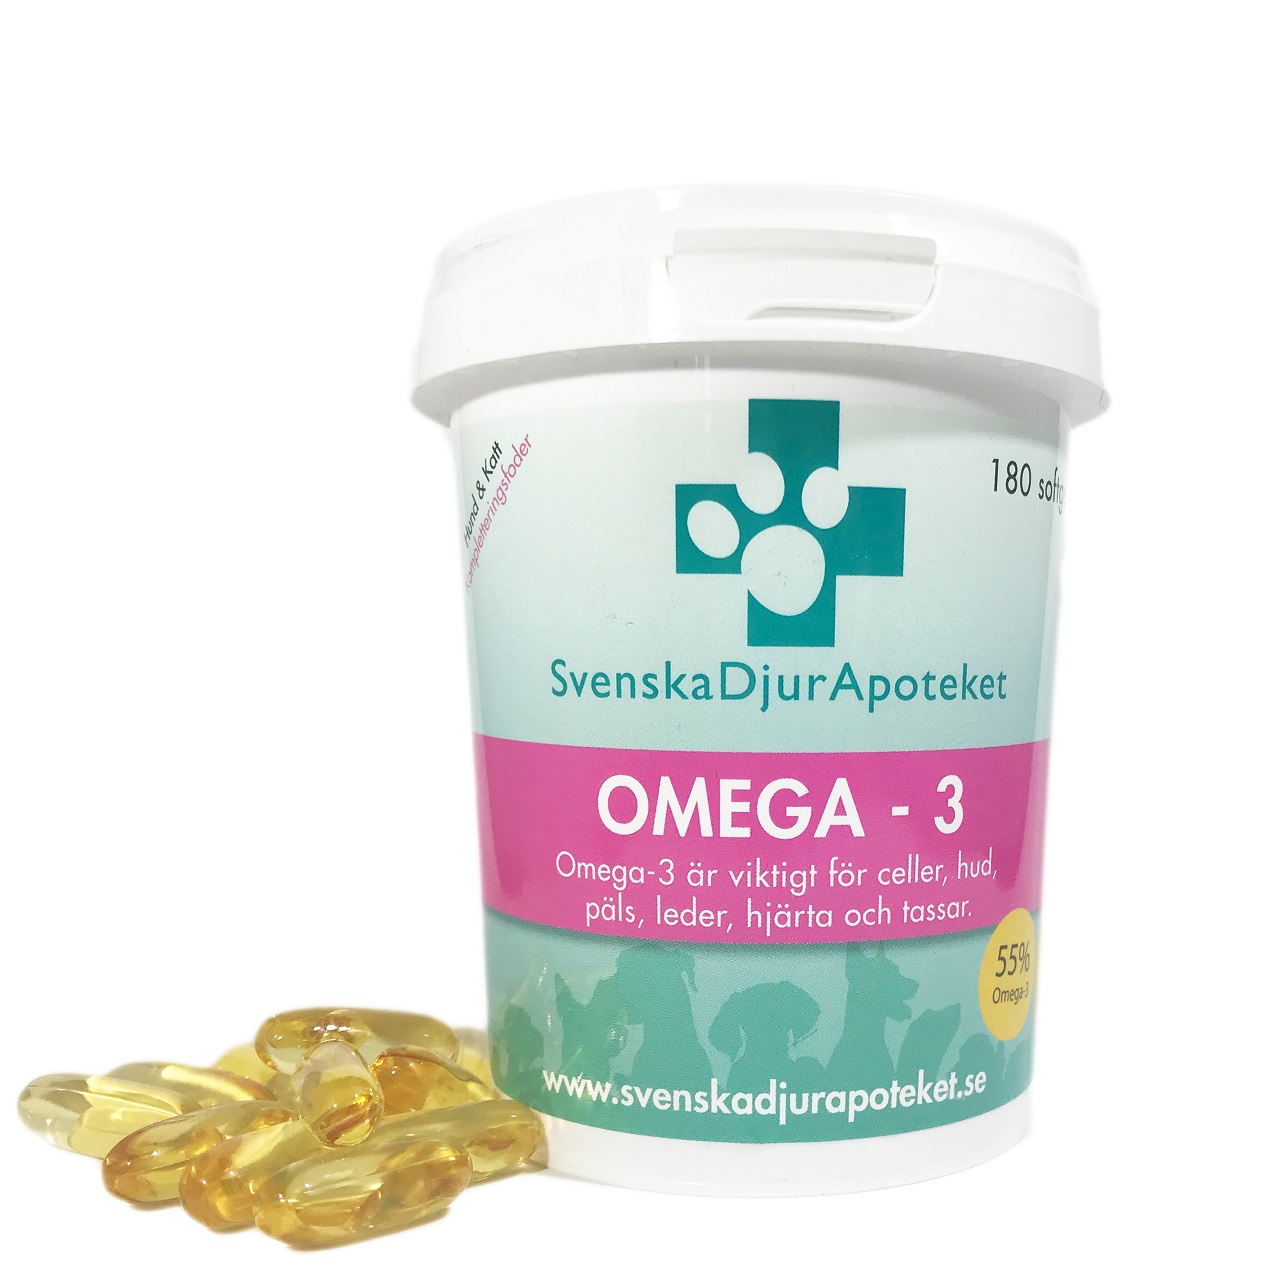 Omega 3 är viktigt för celler, hud, päls, leder, hjärta och tassar